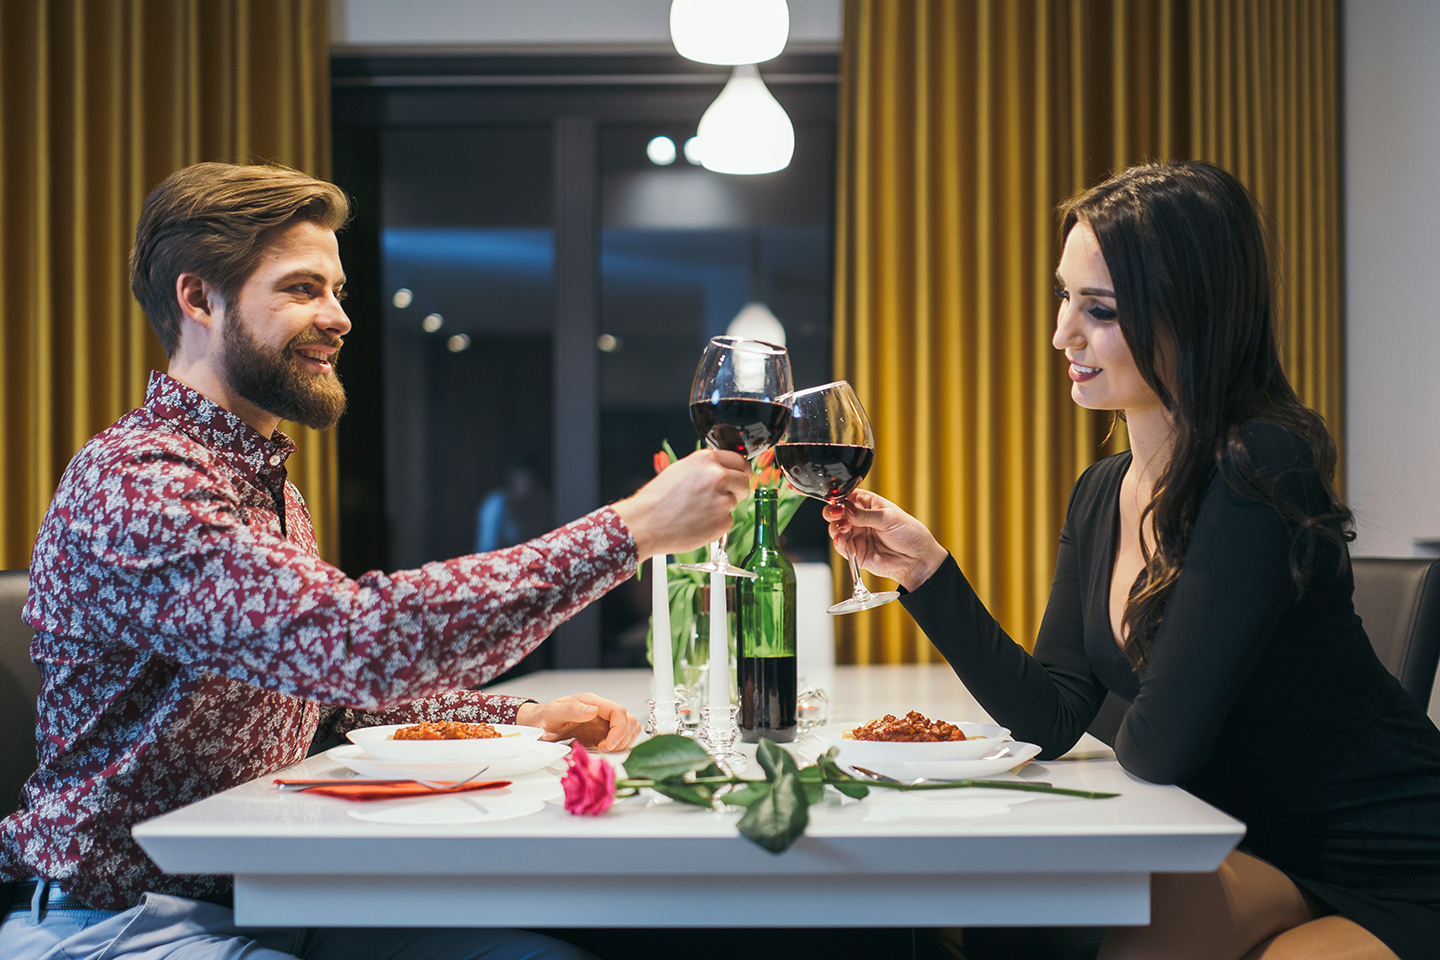 30 cosas que puedes hacer con tu novio, actividades nuevas y románticas -  Métodos Para Ligar